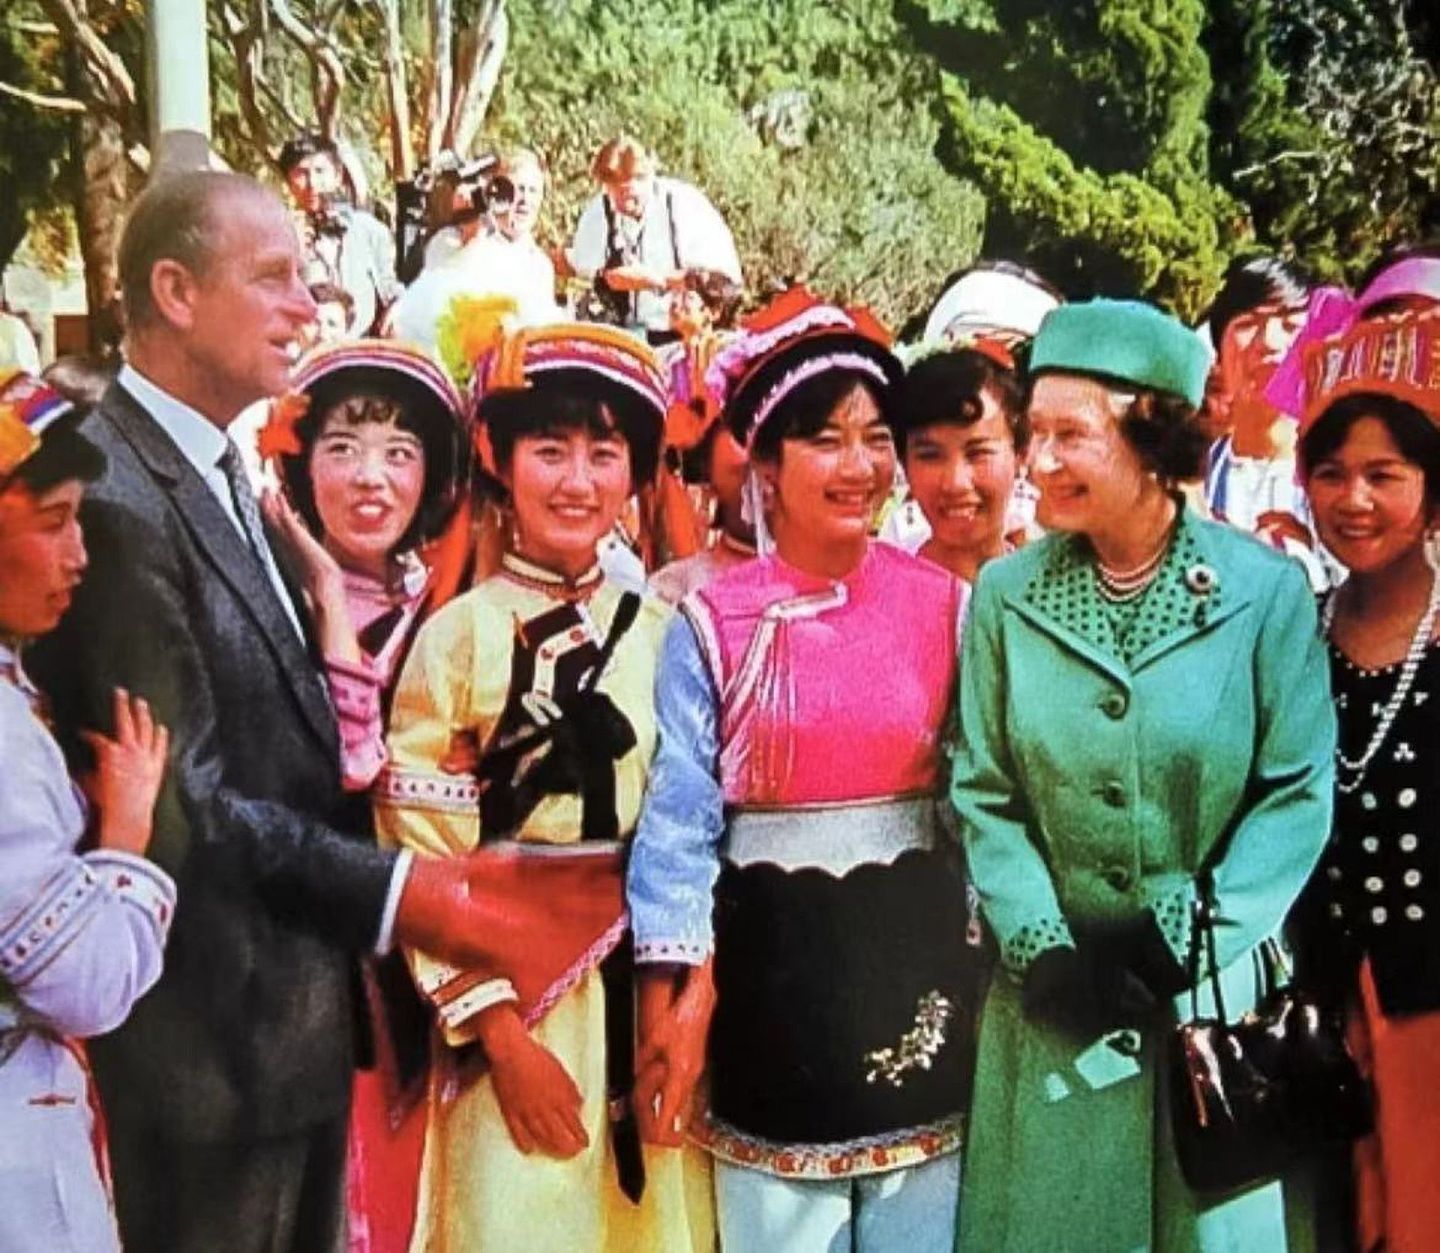 英国驻华大使吴若兰4月9日在社交媒体上悼念菲利普亲王。吴若兰发布了菲利普亲王和英国女王伊丽莎白二世1986年访华的照片。图为菲利普亲王和英国女王伊丽莎白二世1986年访华时与中国民众交谈。（Twitter@Caroline Wilson）